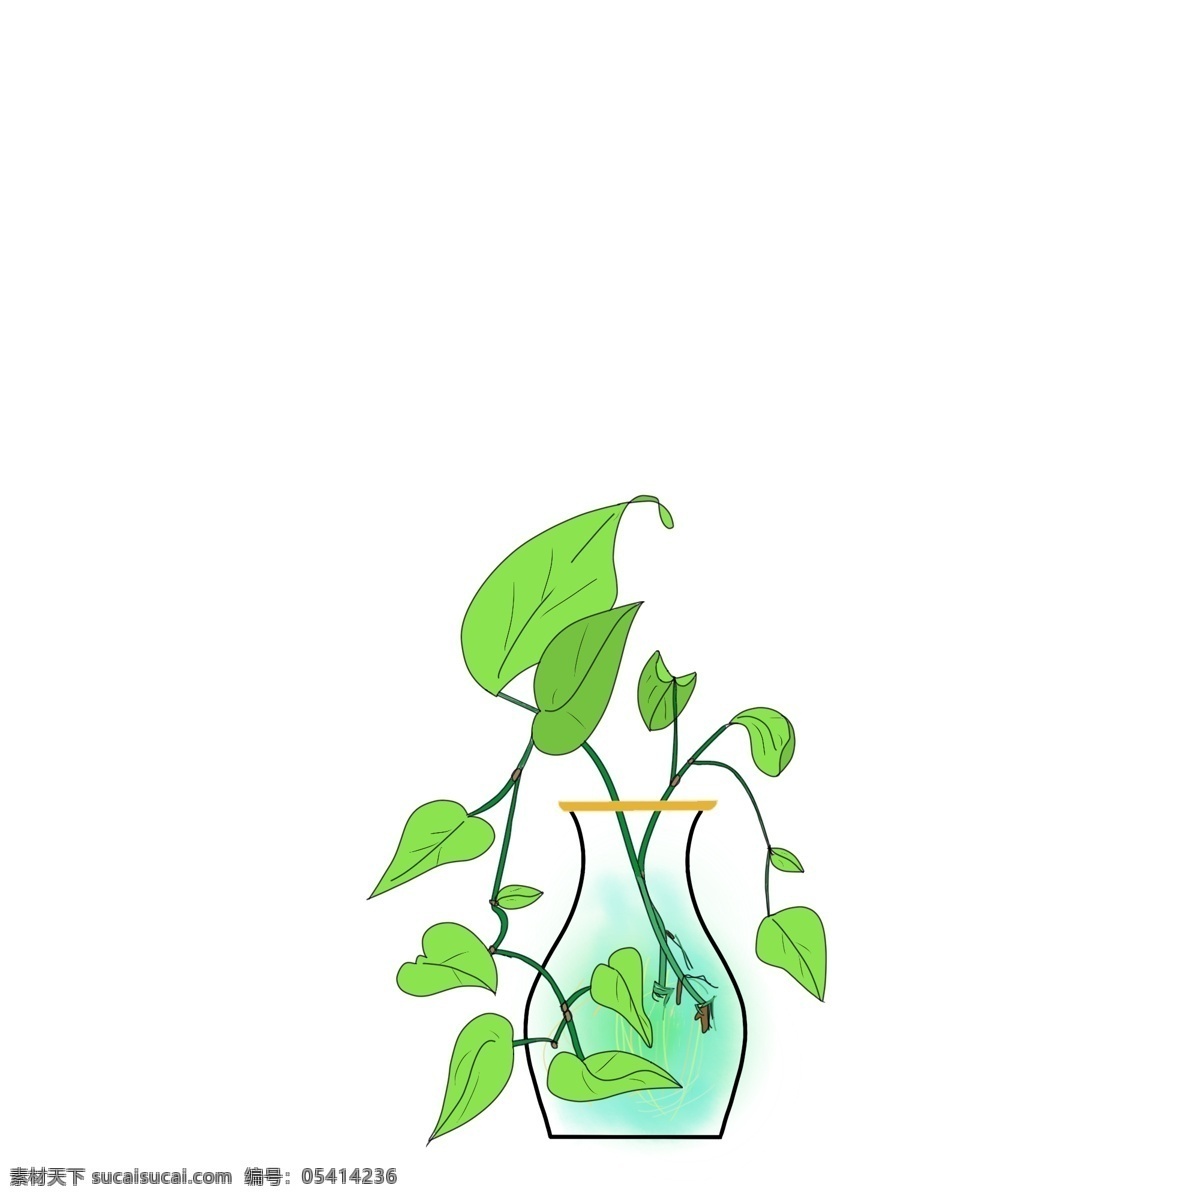 原创 花瓶 水培 绿 萝 植物 手绘 风 简约 小 清新 元素 绿萝 水 绿色 春天 小清新 简单 绿意 窗台植物 办公室植物 根系 家庭培养植物